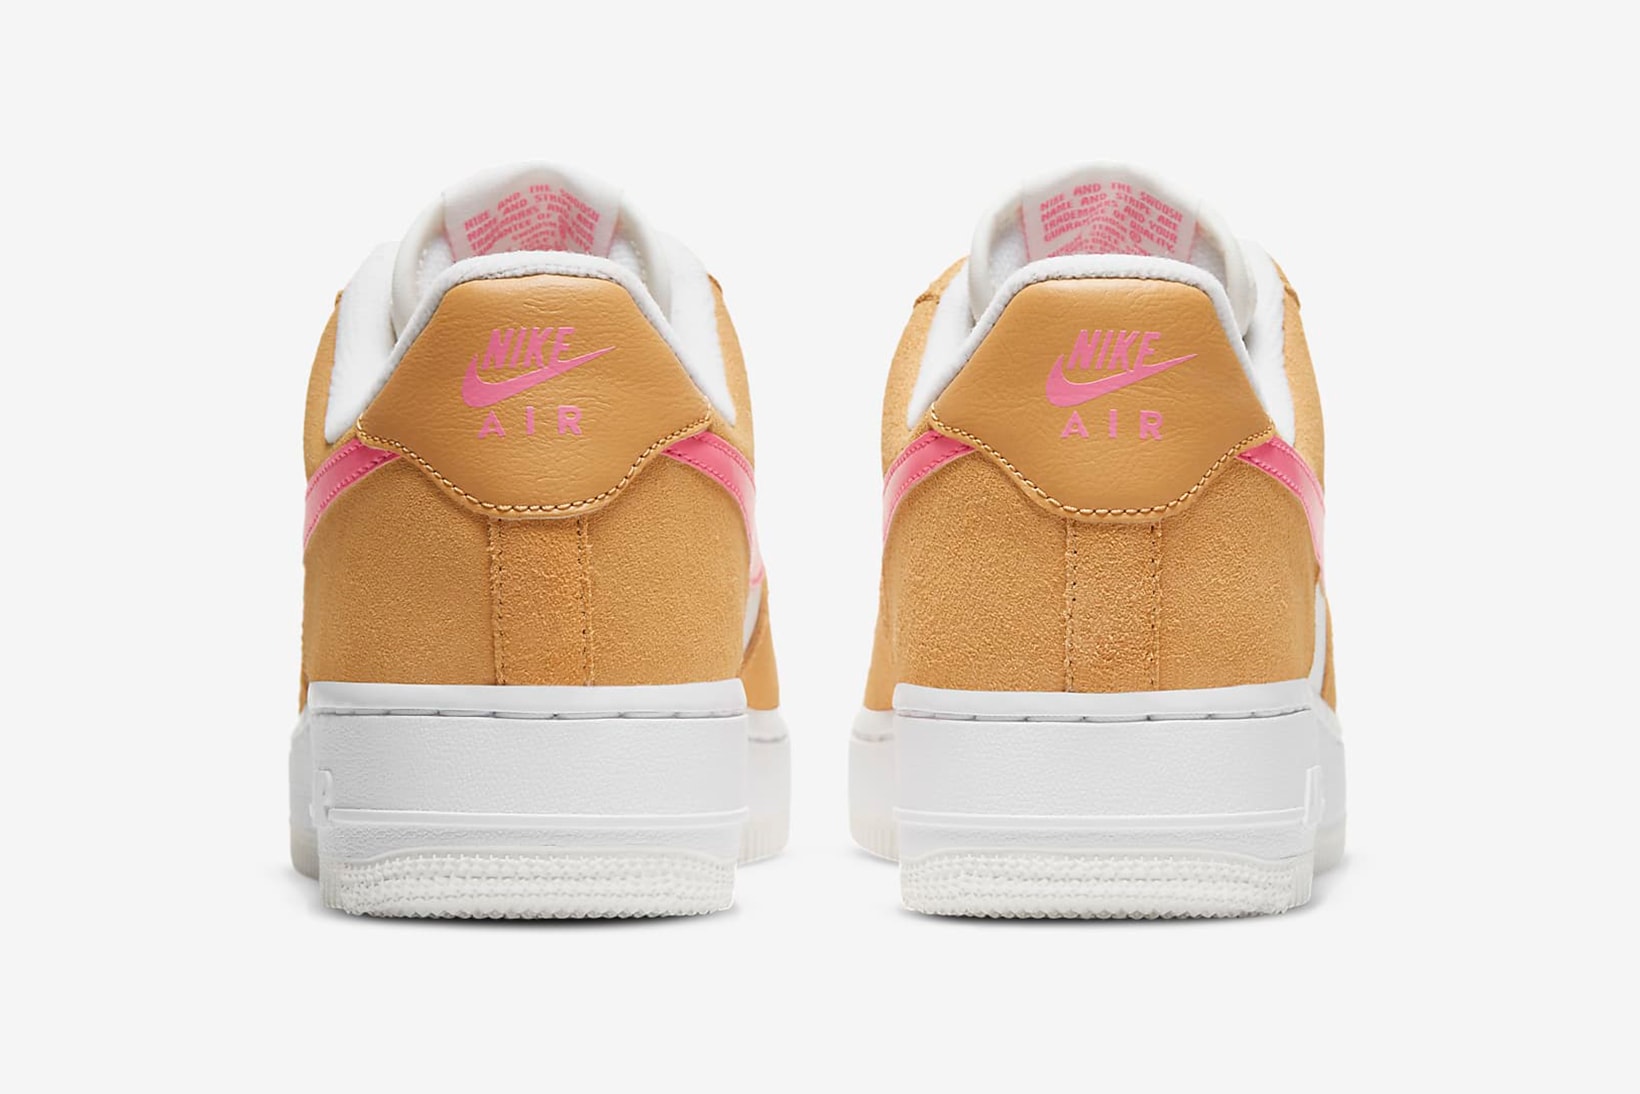 nike air force 1 07 womens sneakers orange pink white colorway footwear shoes sneakerhead